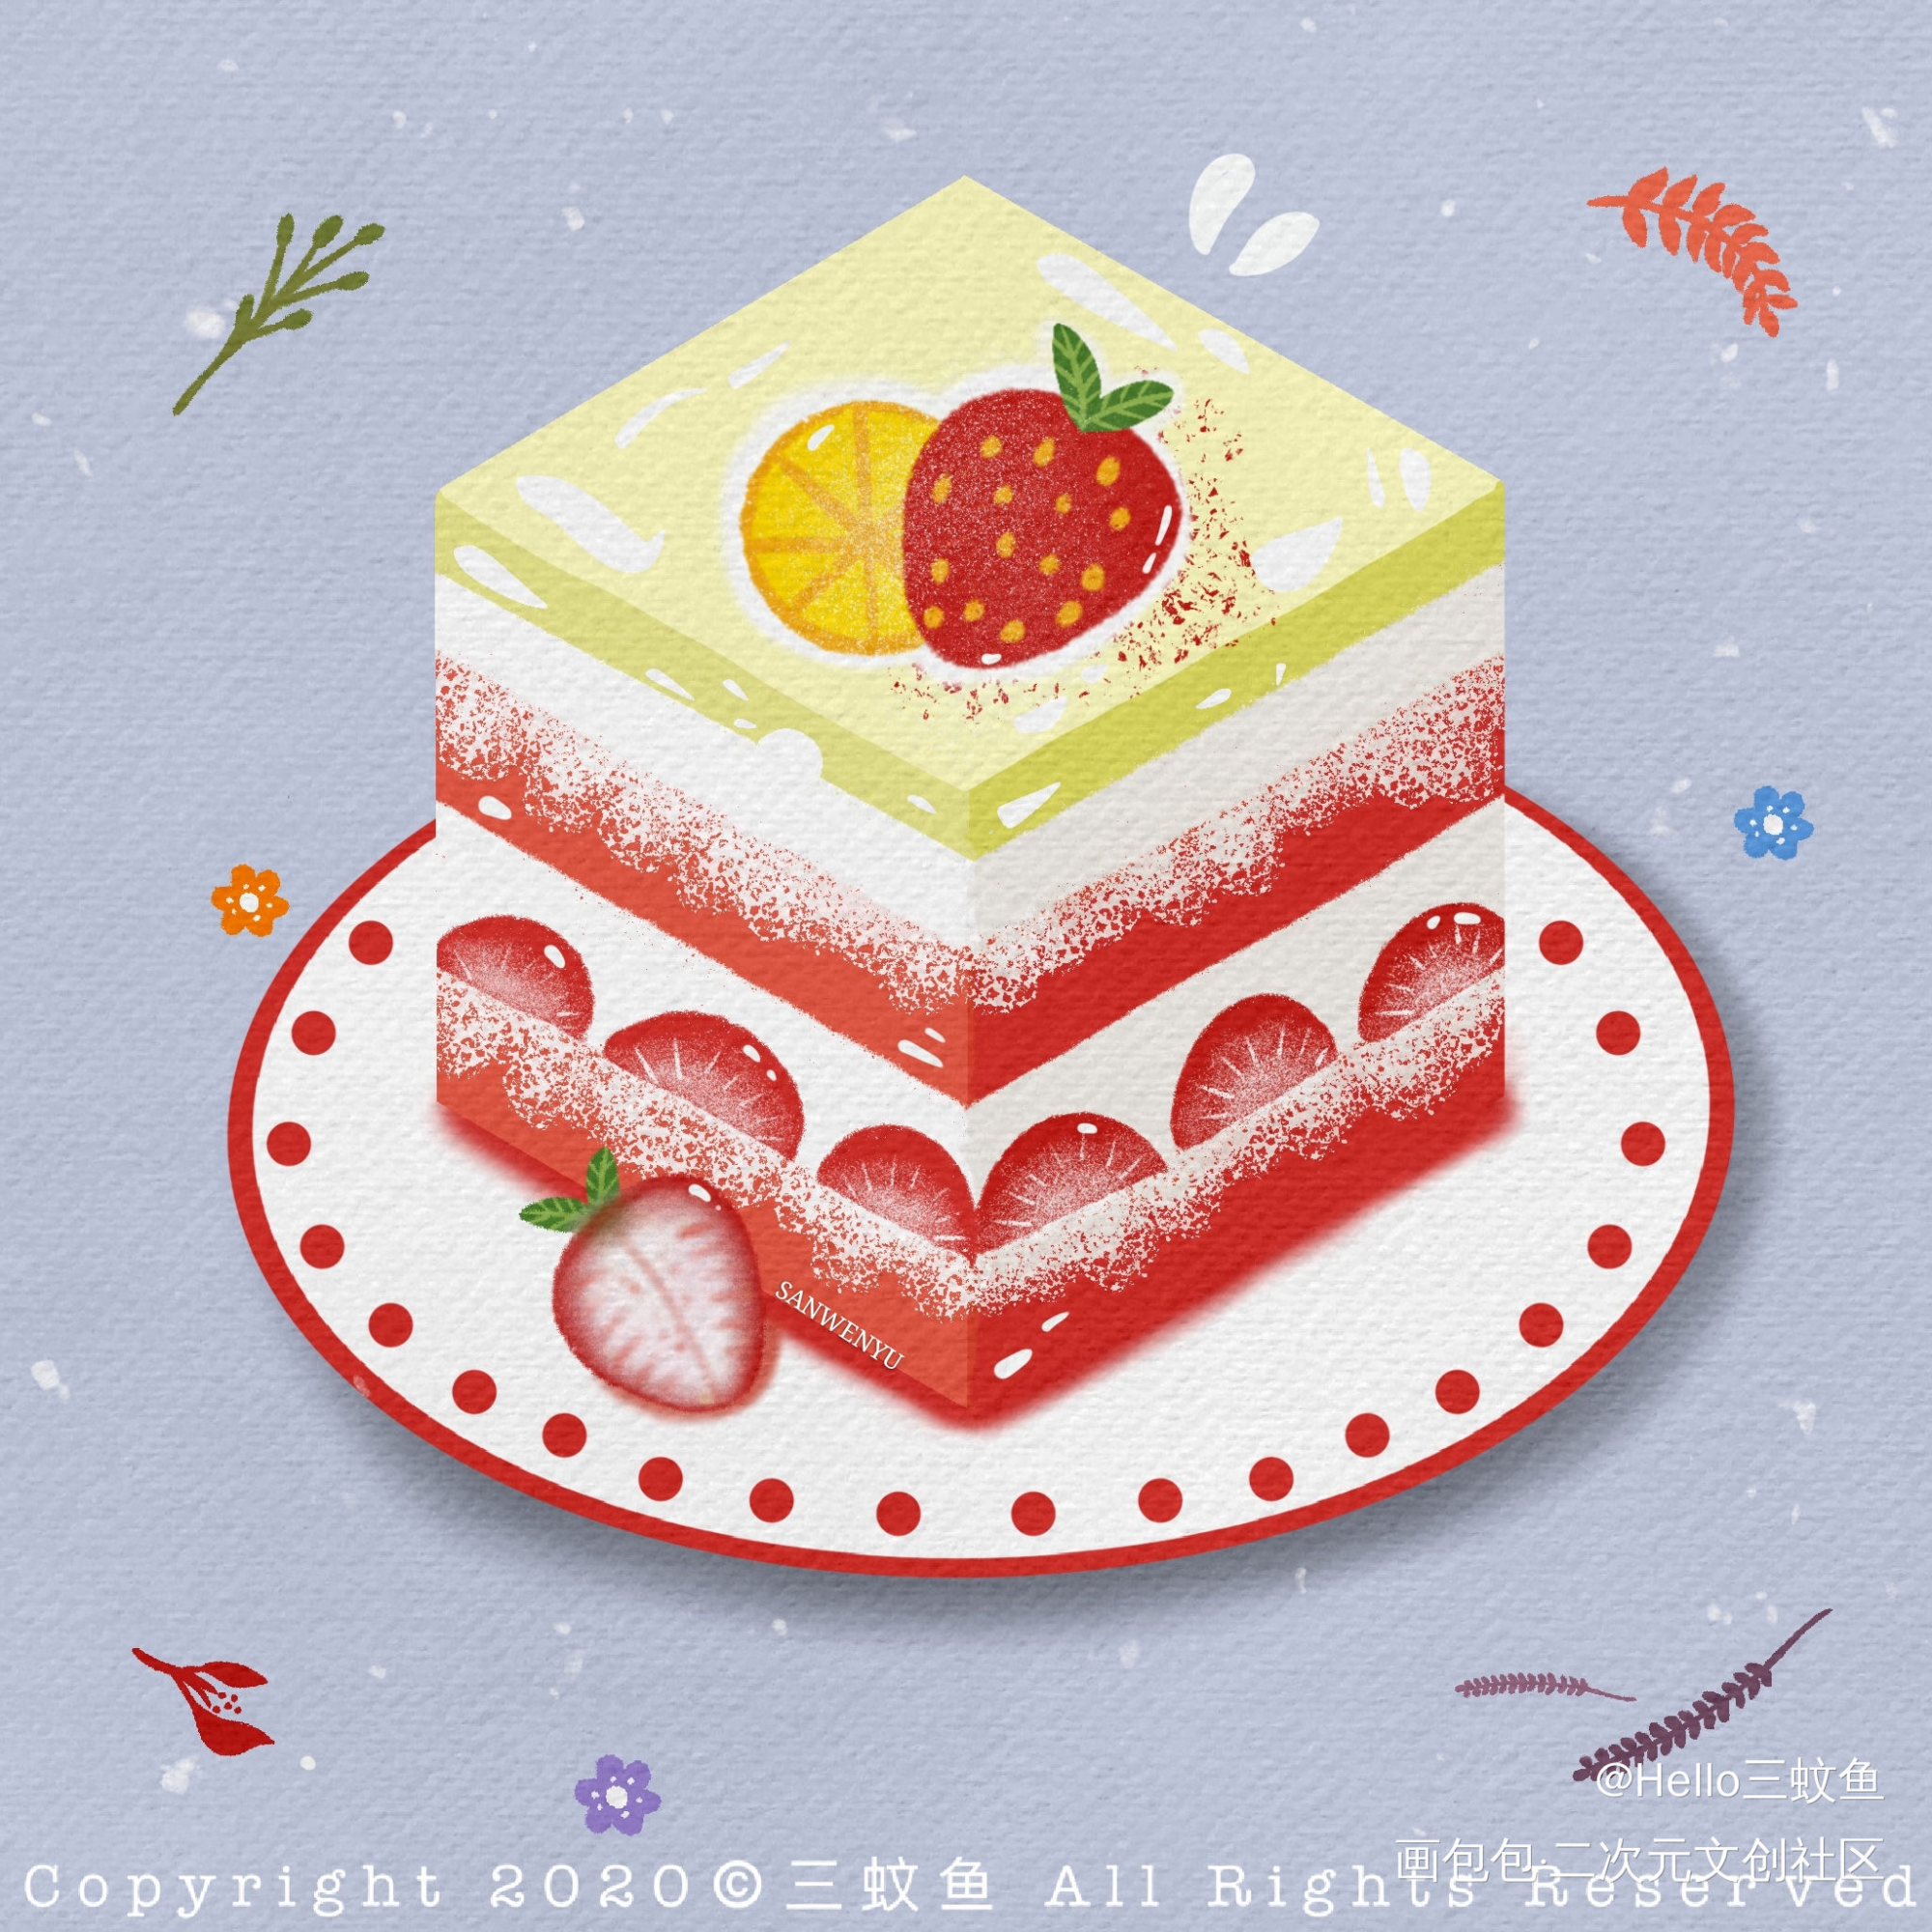 没有谁能抗拒得了甜品～_平涂蛋糕草莓插画甜品小清新绘画作品